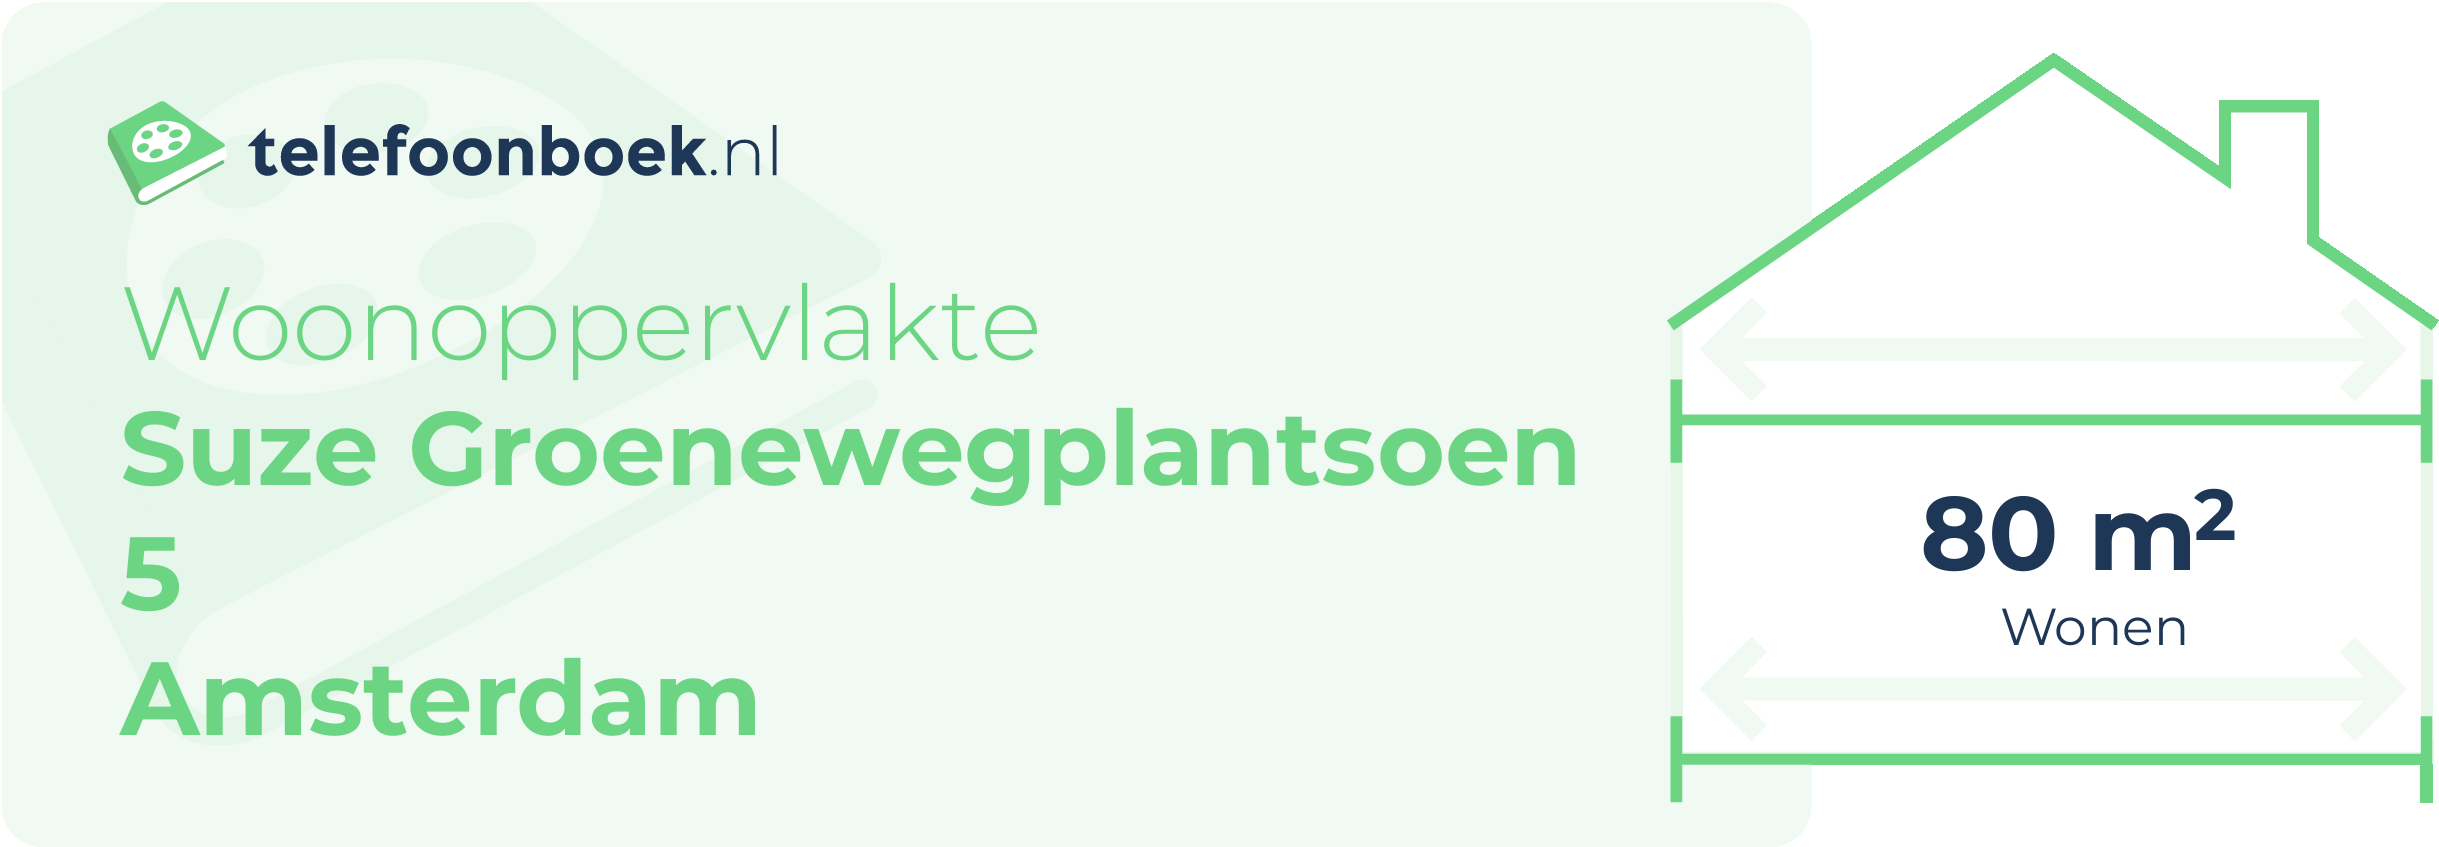 Woonoppervlakte Suze Groenewegplantsoen 5 Amsterdam